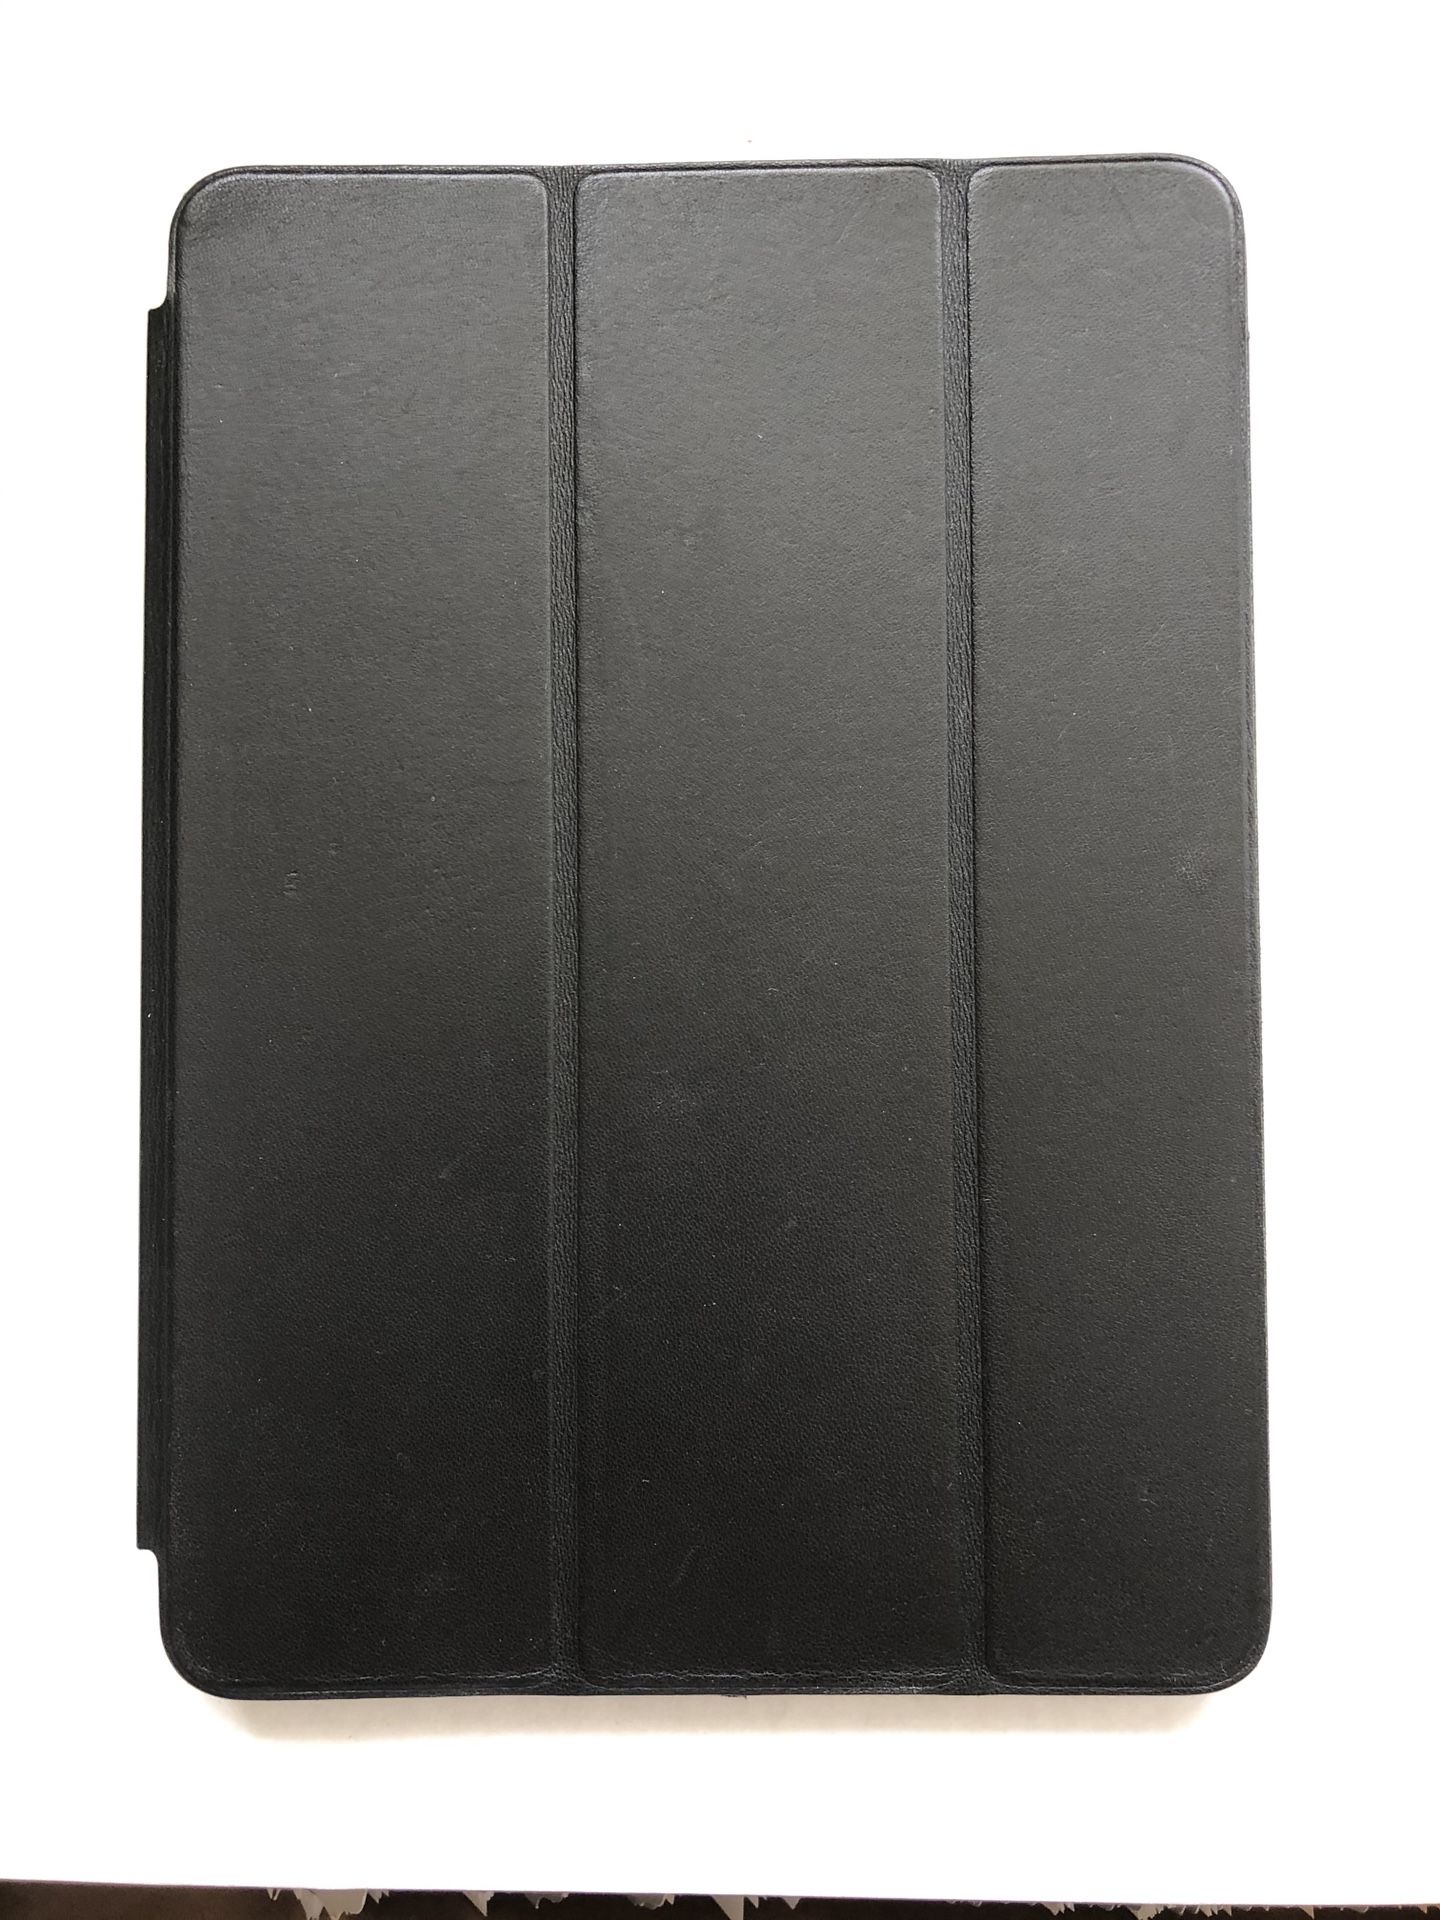 Genuine Apple Smart Case Folio Over for iPad Air